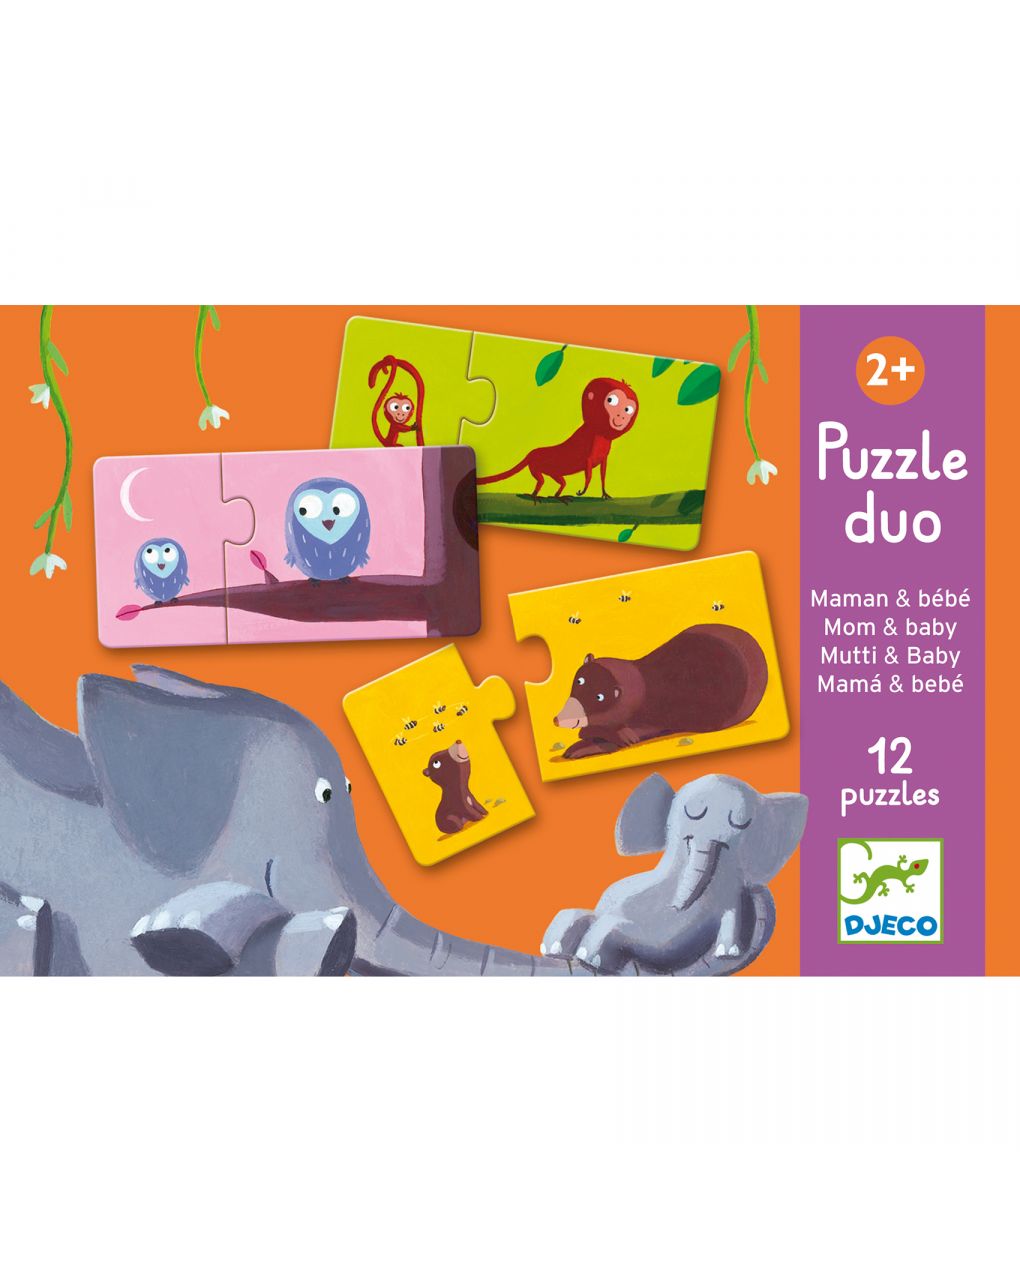 Puzzle duo mom and baby 12 puzzle di 2 tessere - djeco - Djeco